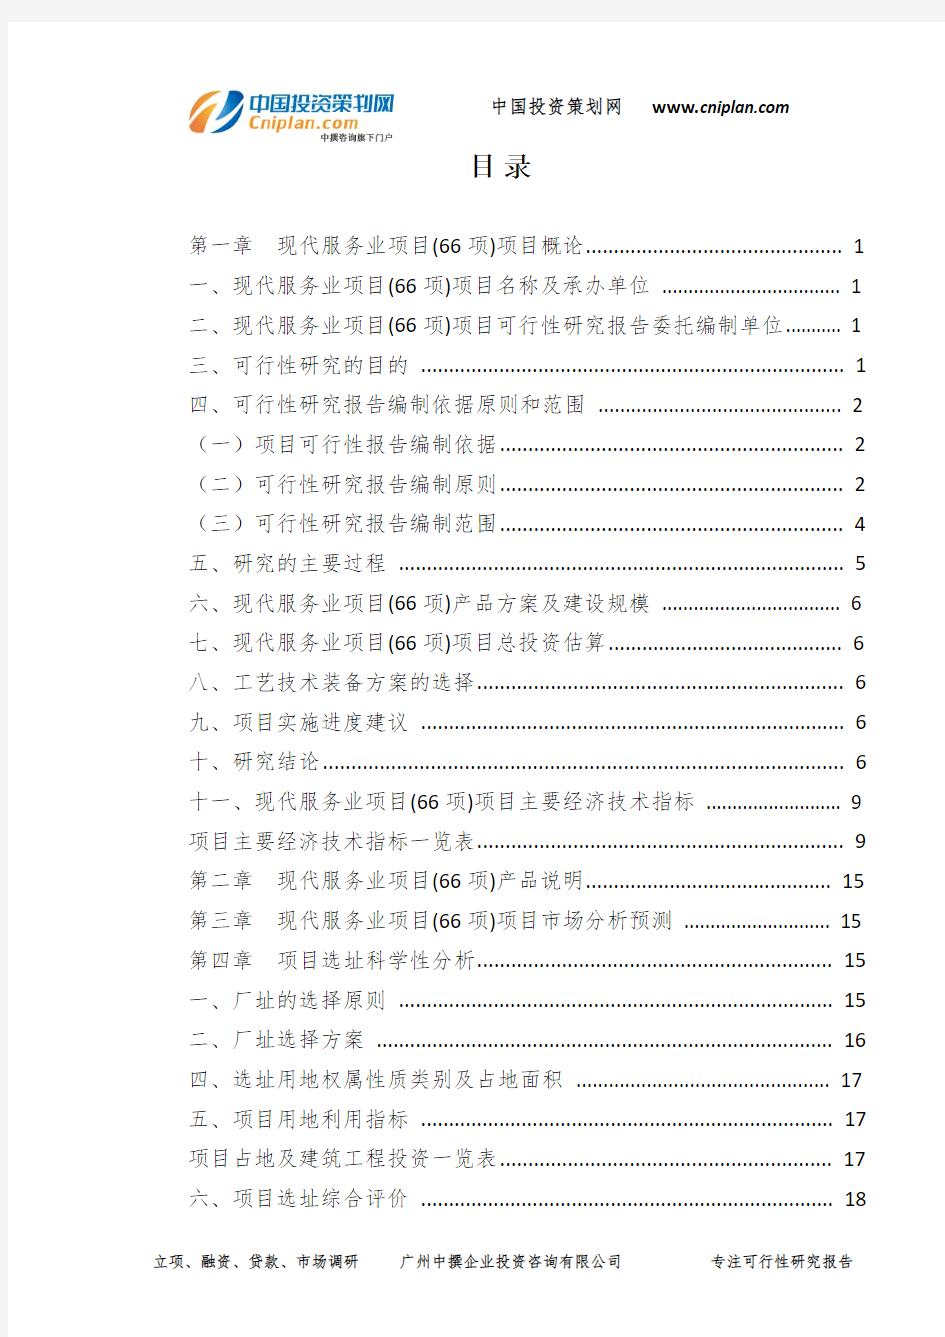 现代服务业项目(66项)可行性研究报告-广州中撰咨询